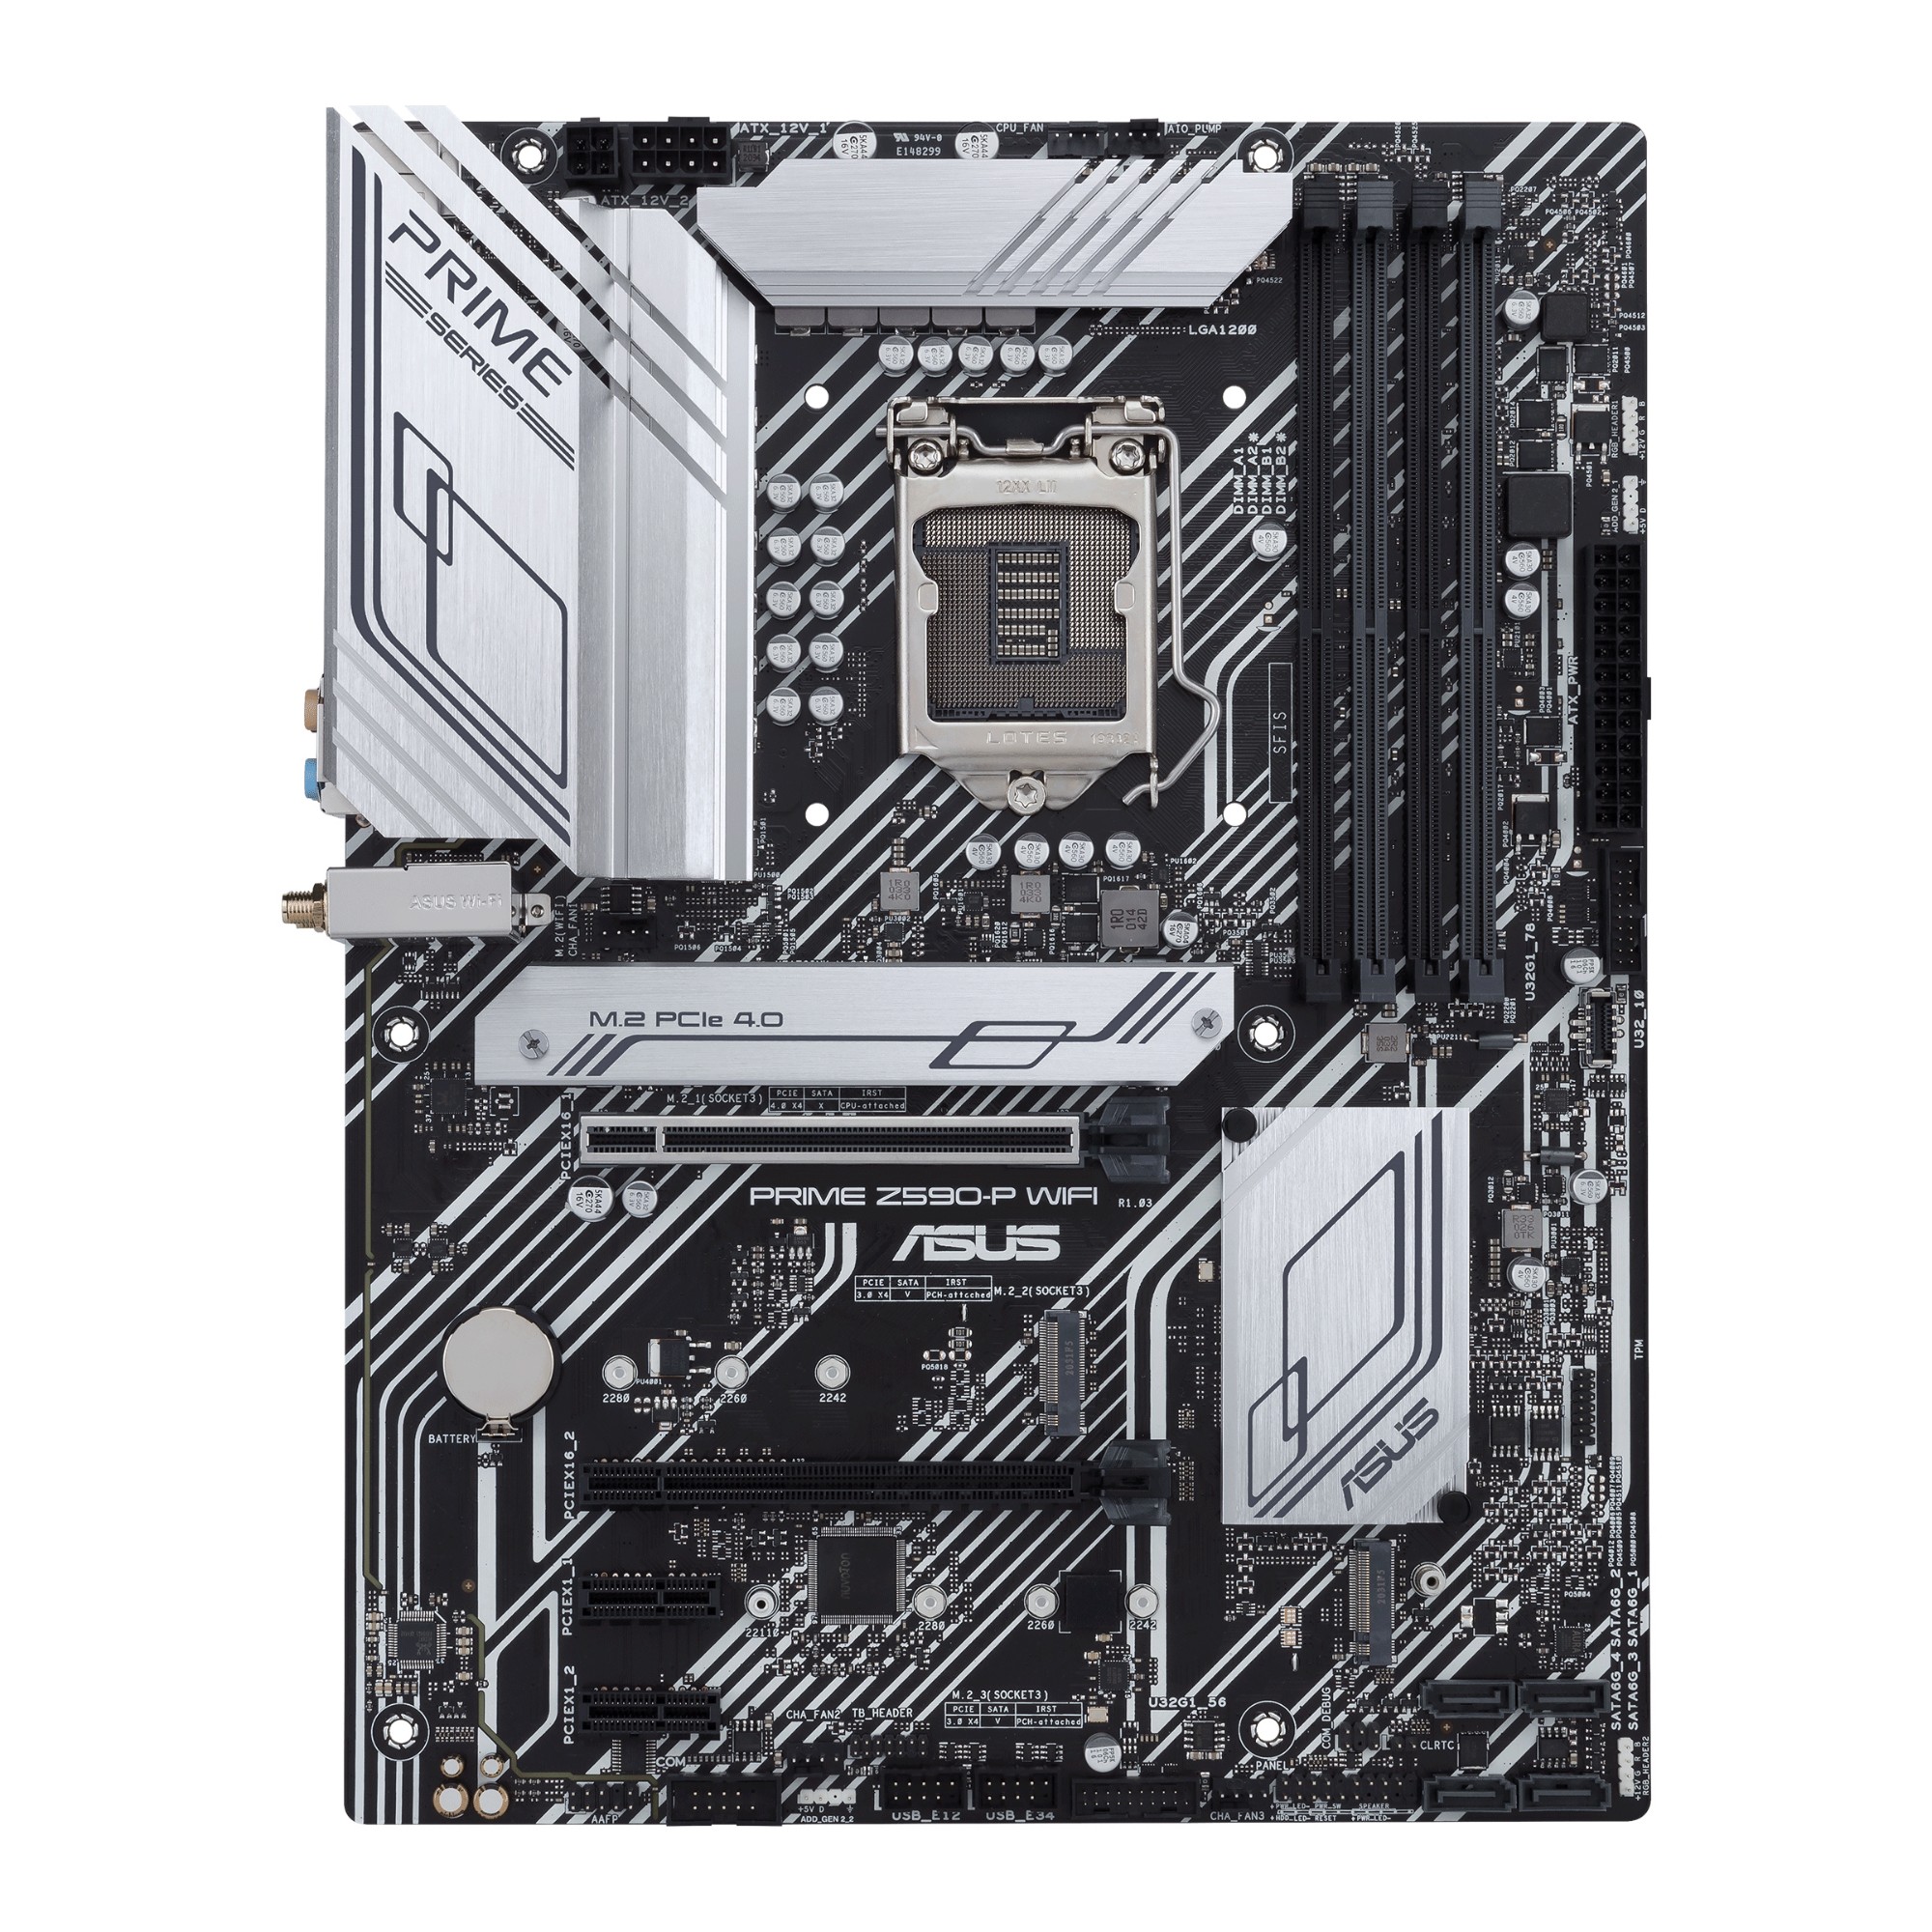 ASUS PRIME Z590-P WIFI motherboard Intel Z590 LGA 1200 ATX